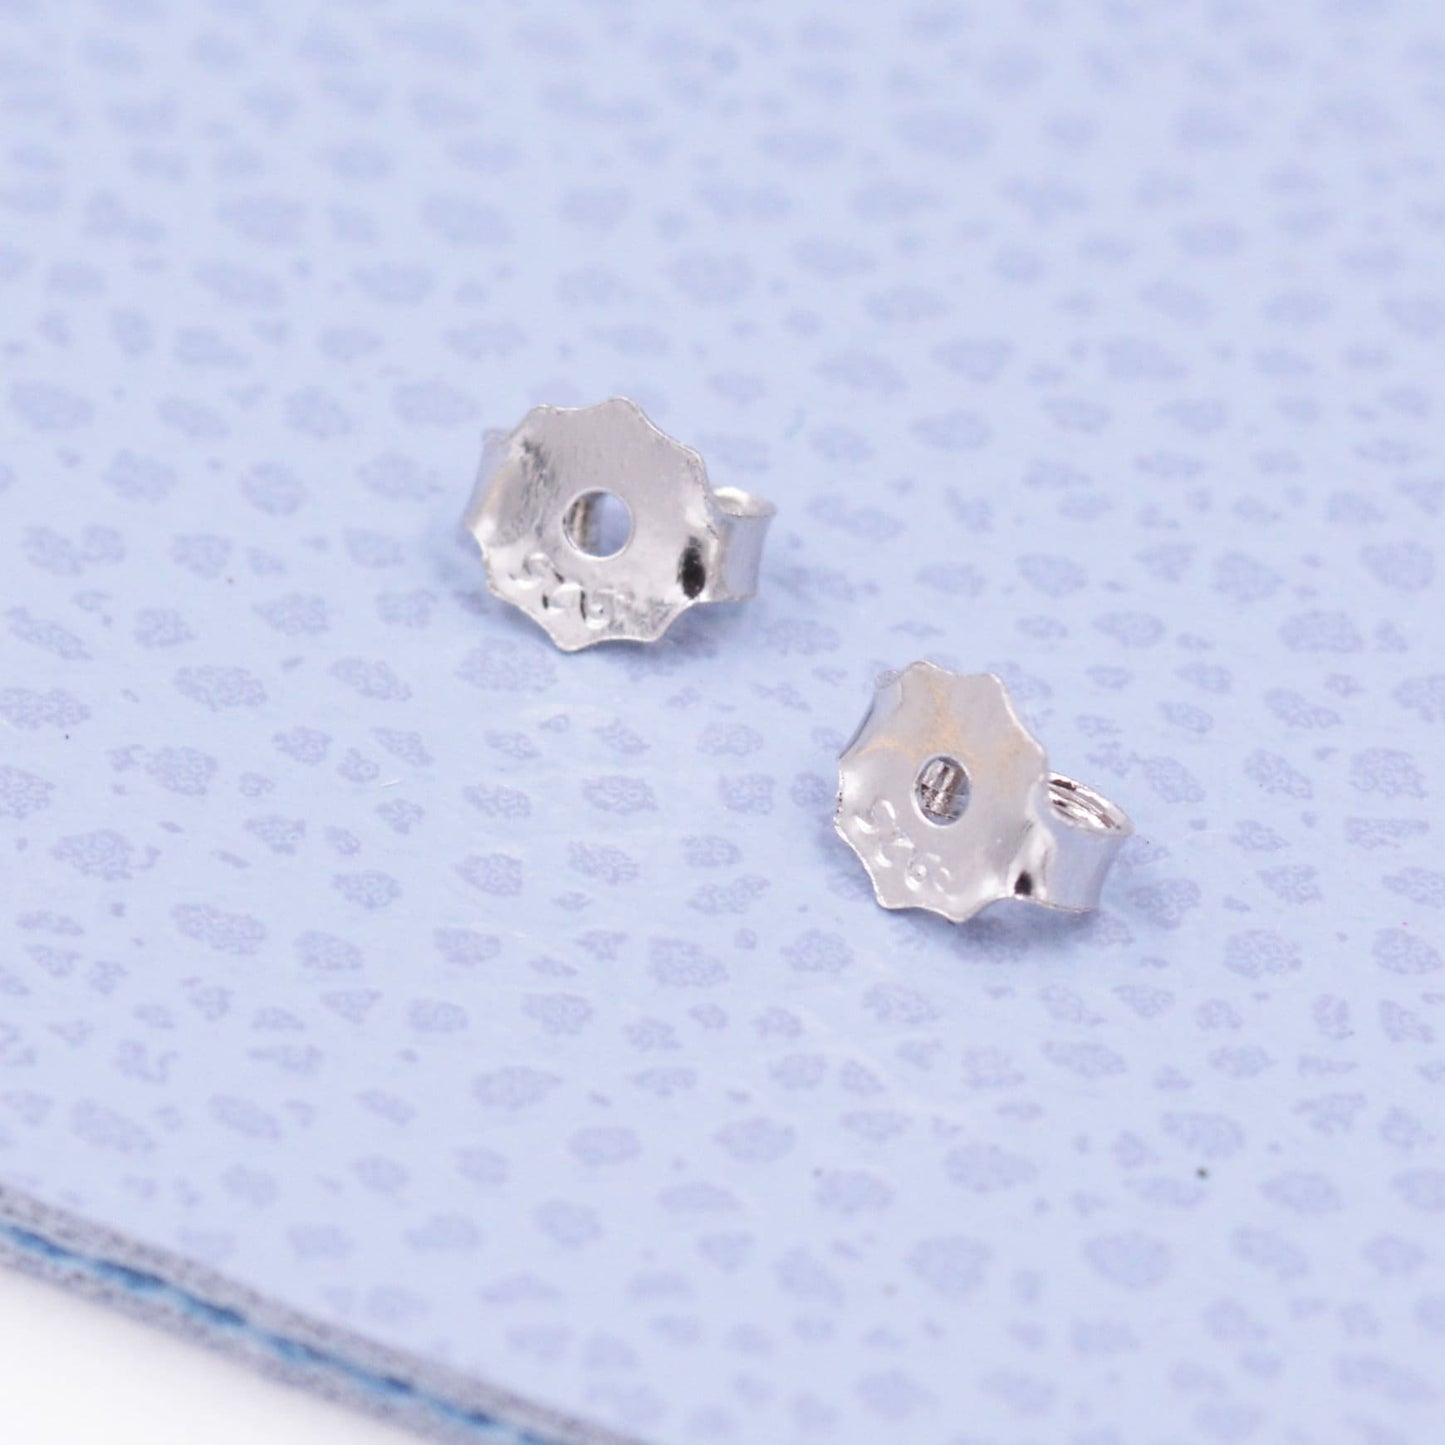 Sterling Silver Droplet Moonstone Stud Earrings, Mermaid Colour Earrings, Simulated Moonstone Glass Earrings, Minimalist